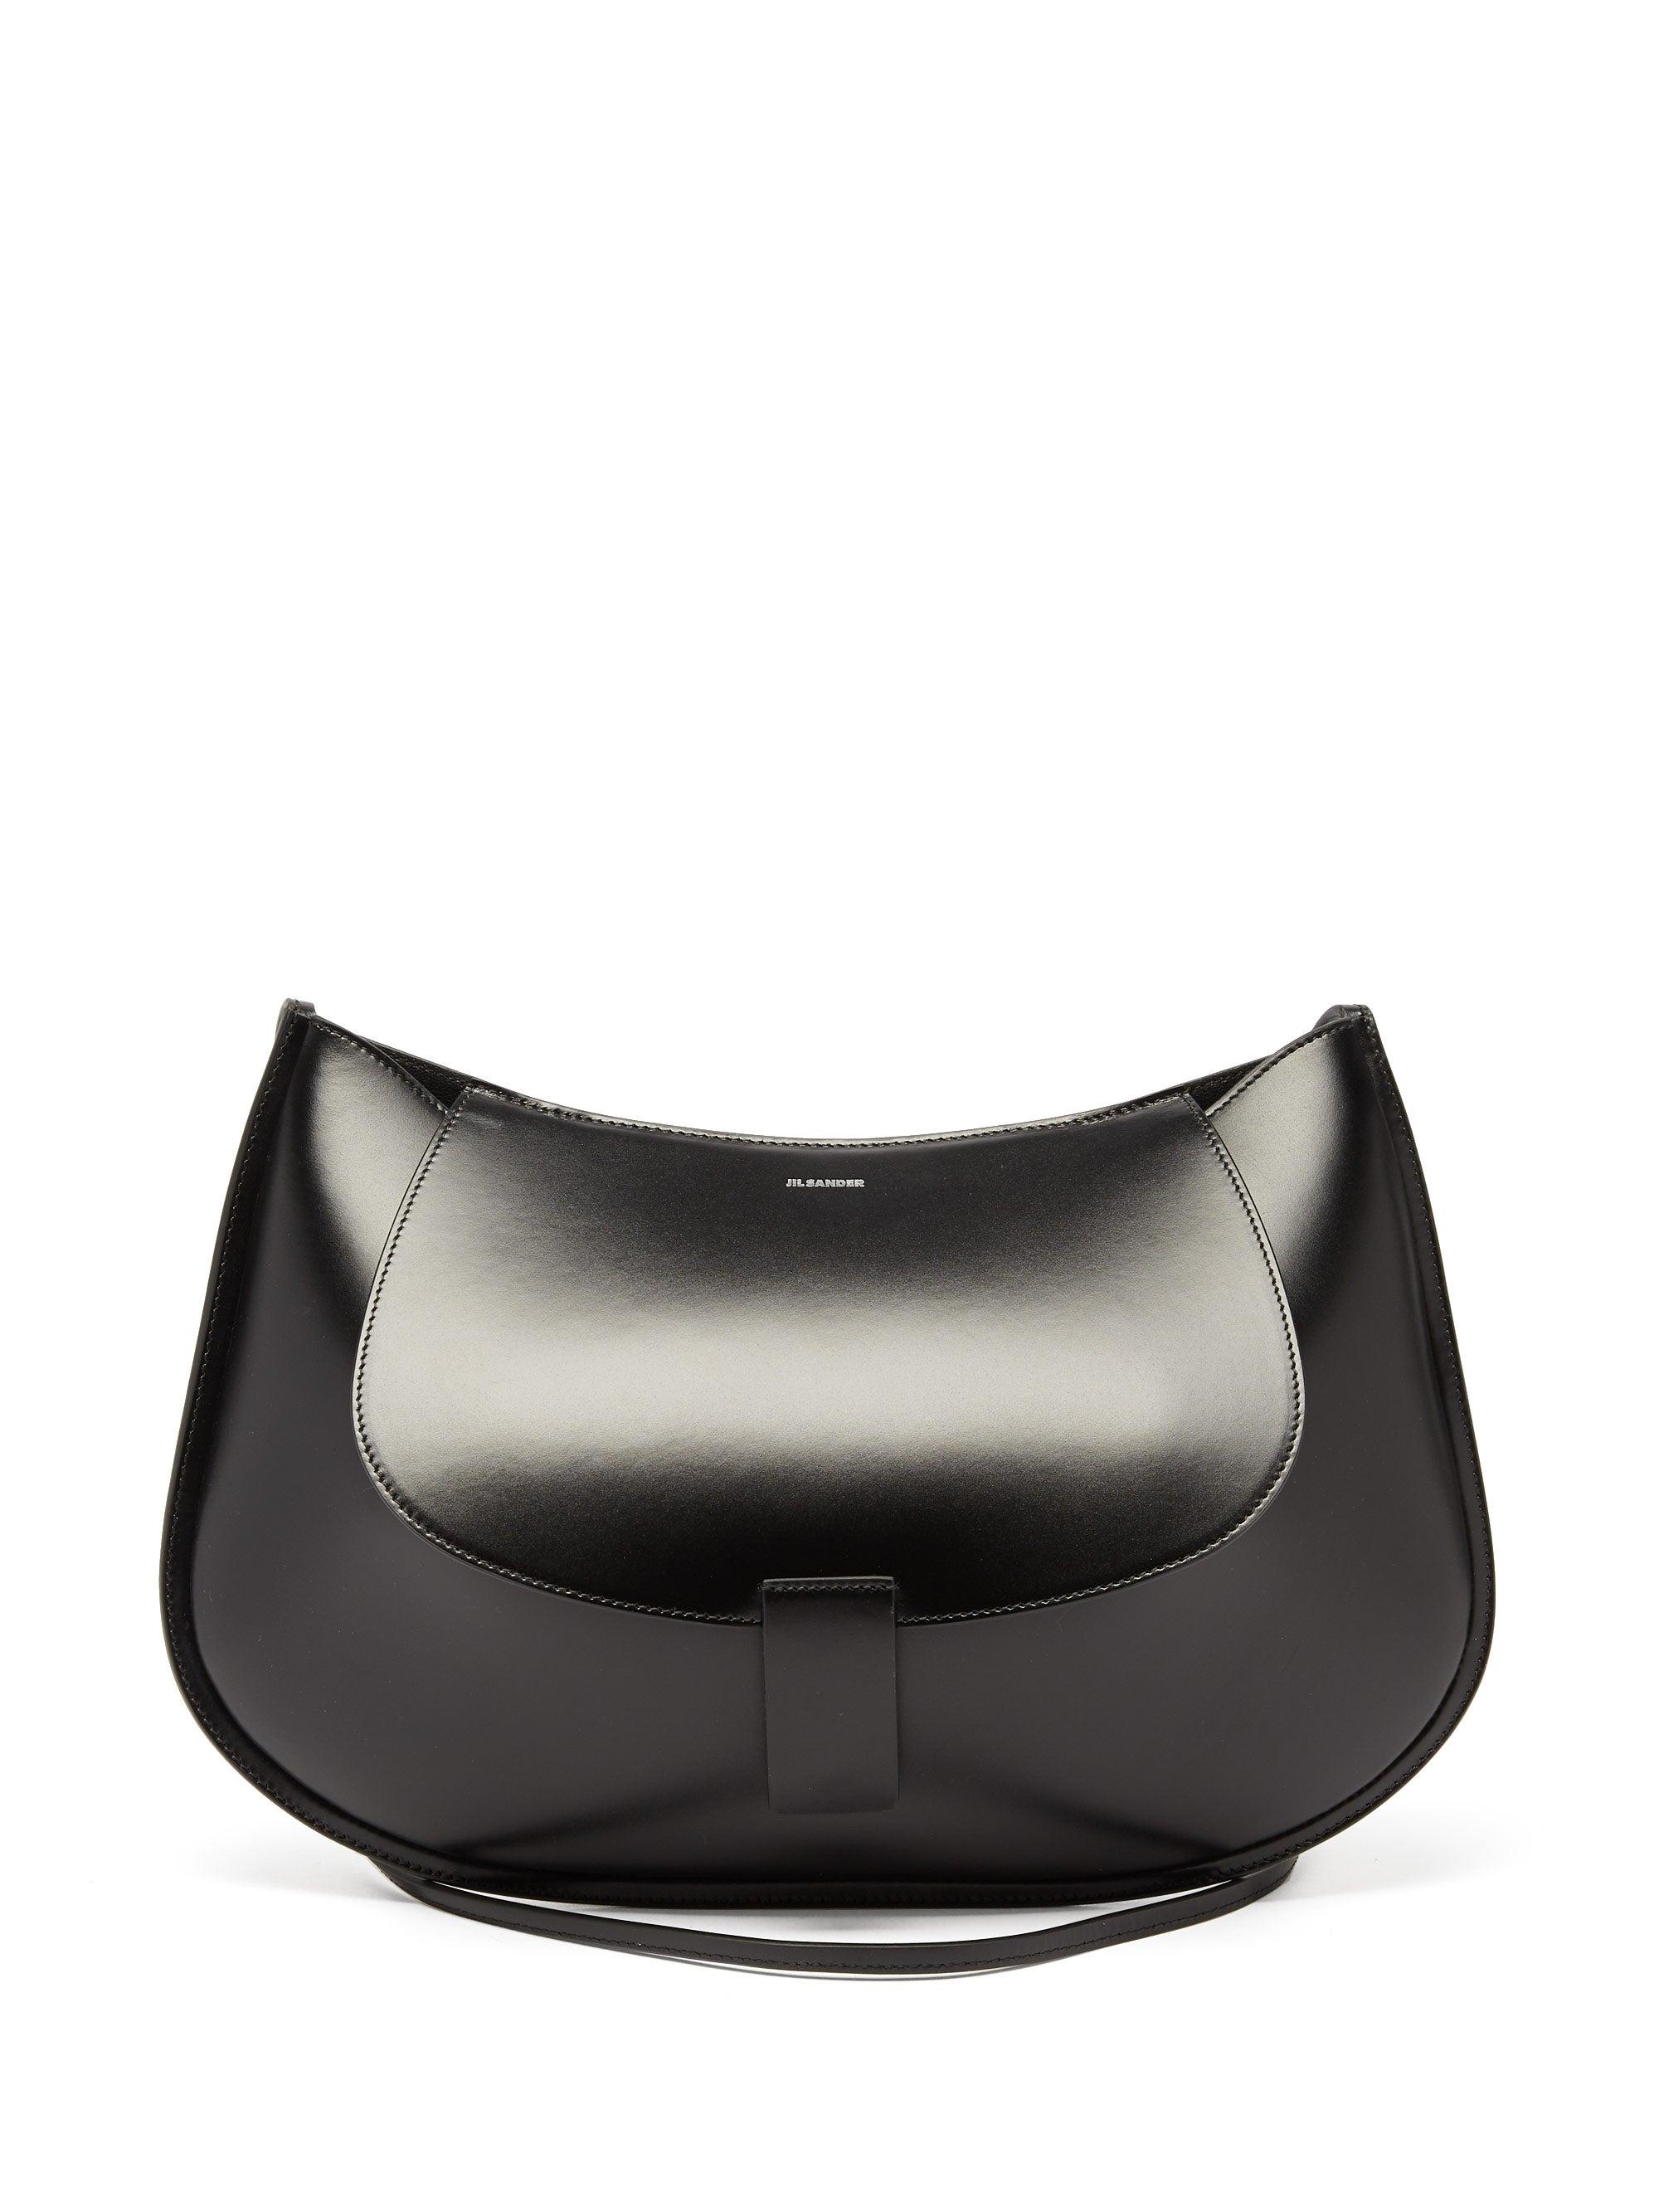 Jil Sander - Women's Medium Crinkled Shoulder Bag - Black - Leather